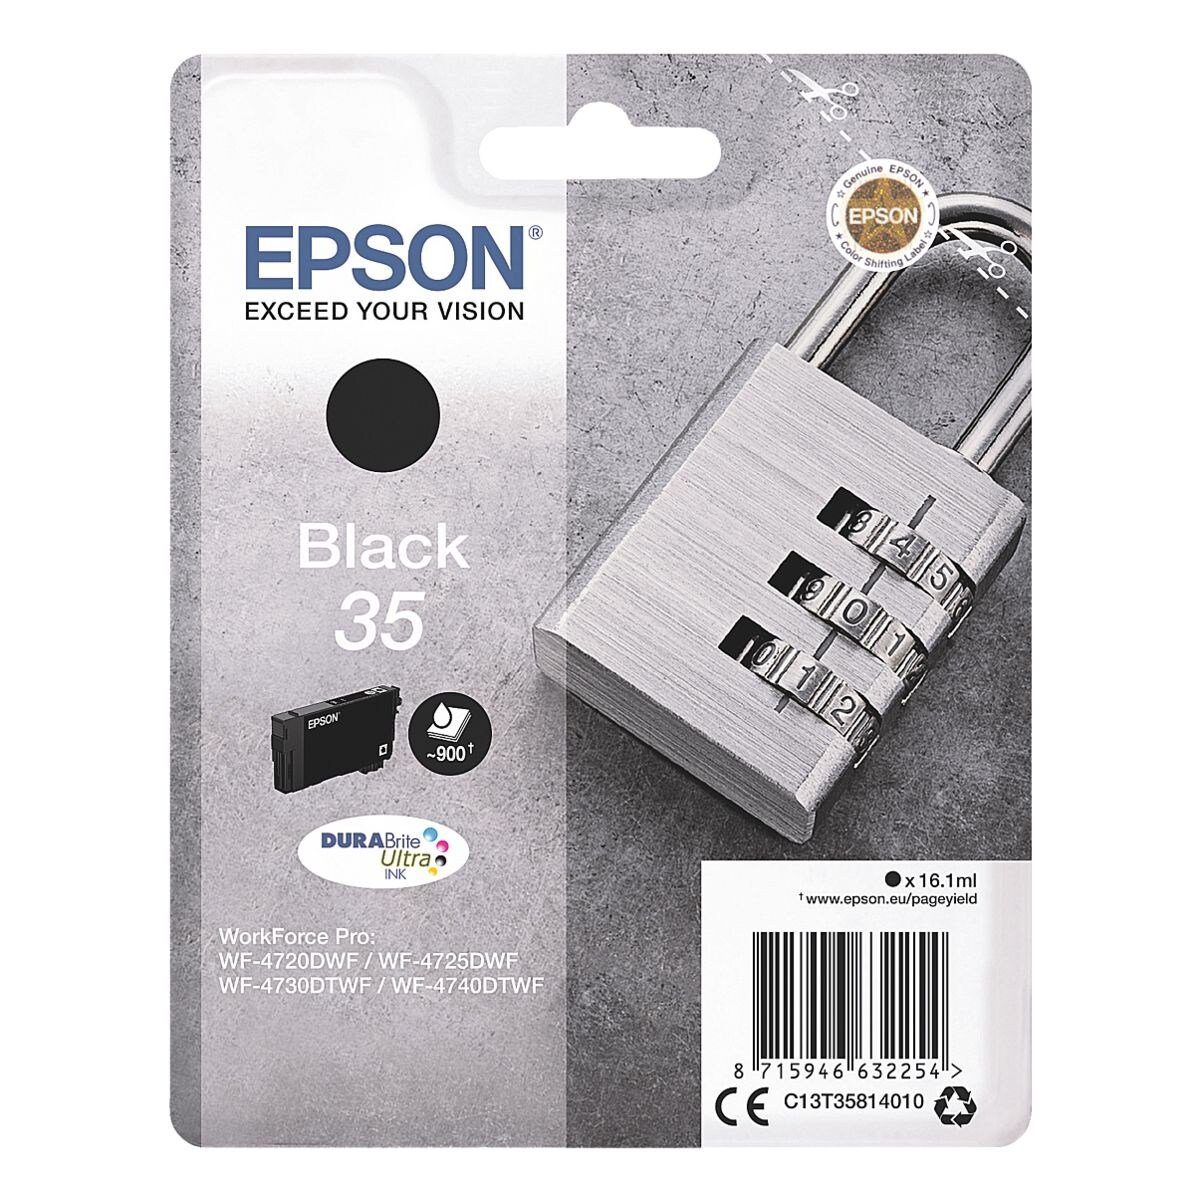 schwarz) (Original Epson Druckerpatrone, 35 Tintenpatrone